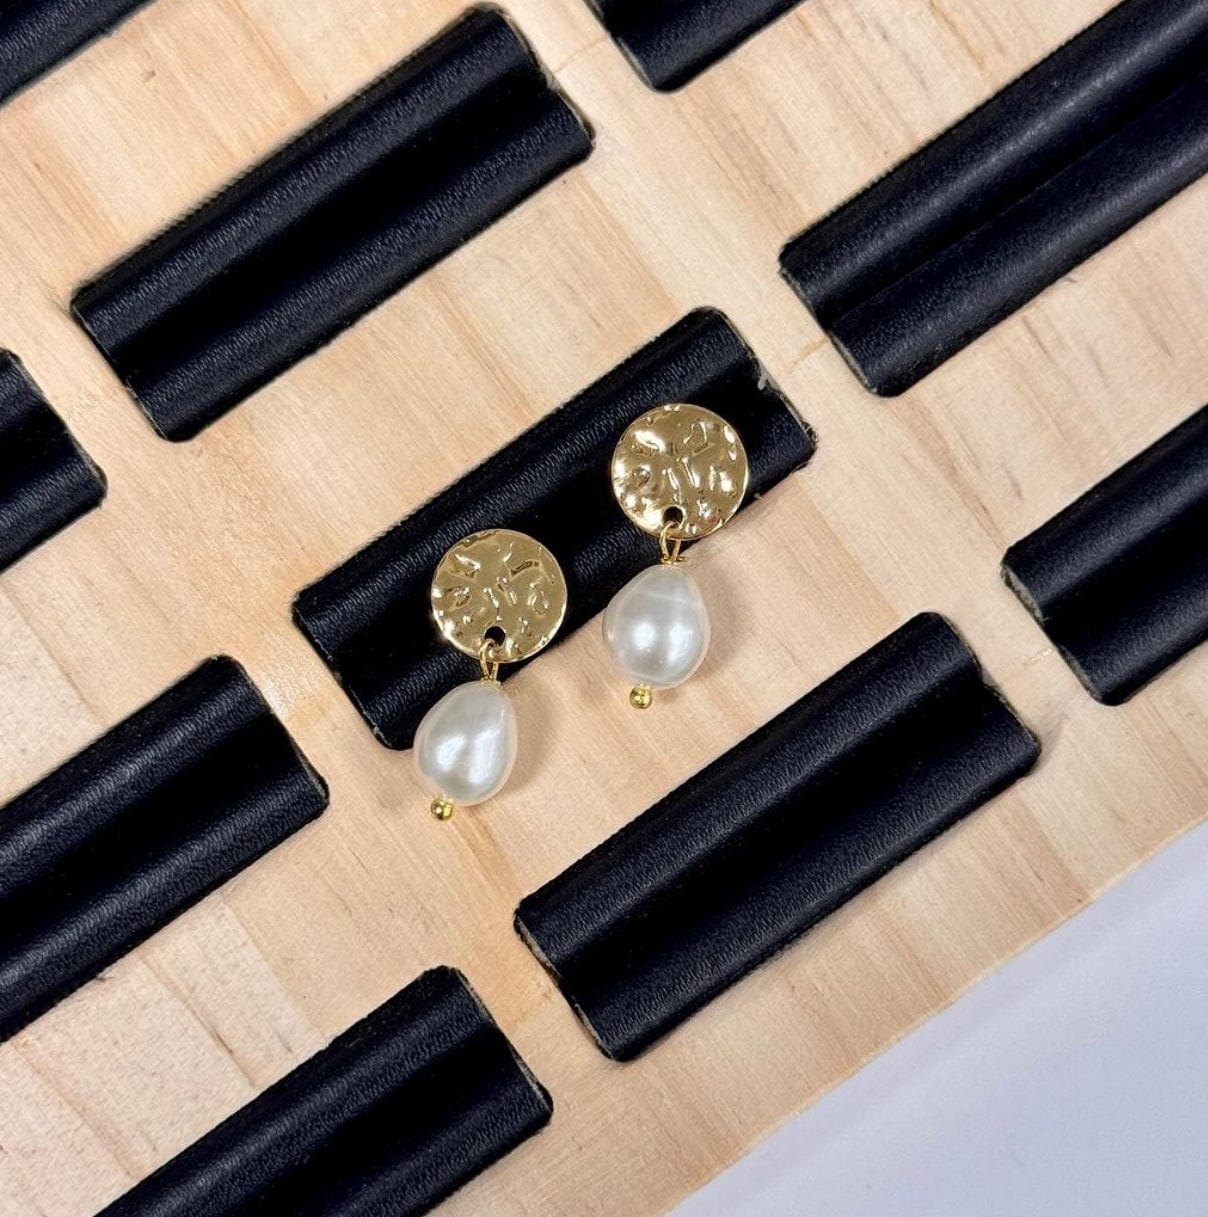 Pandawhole Ørestikkere Ørestikkere Med Mønster, Forgyldt Stål, 10mm